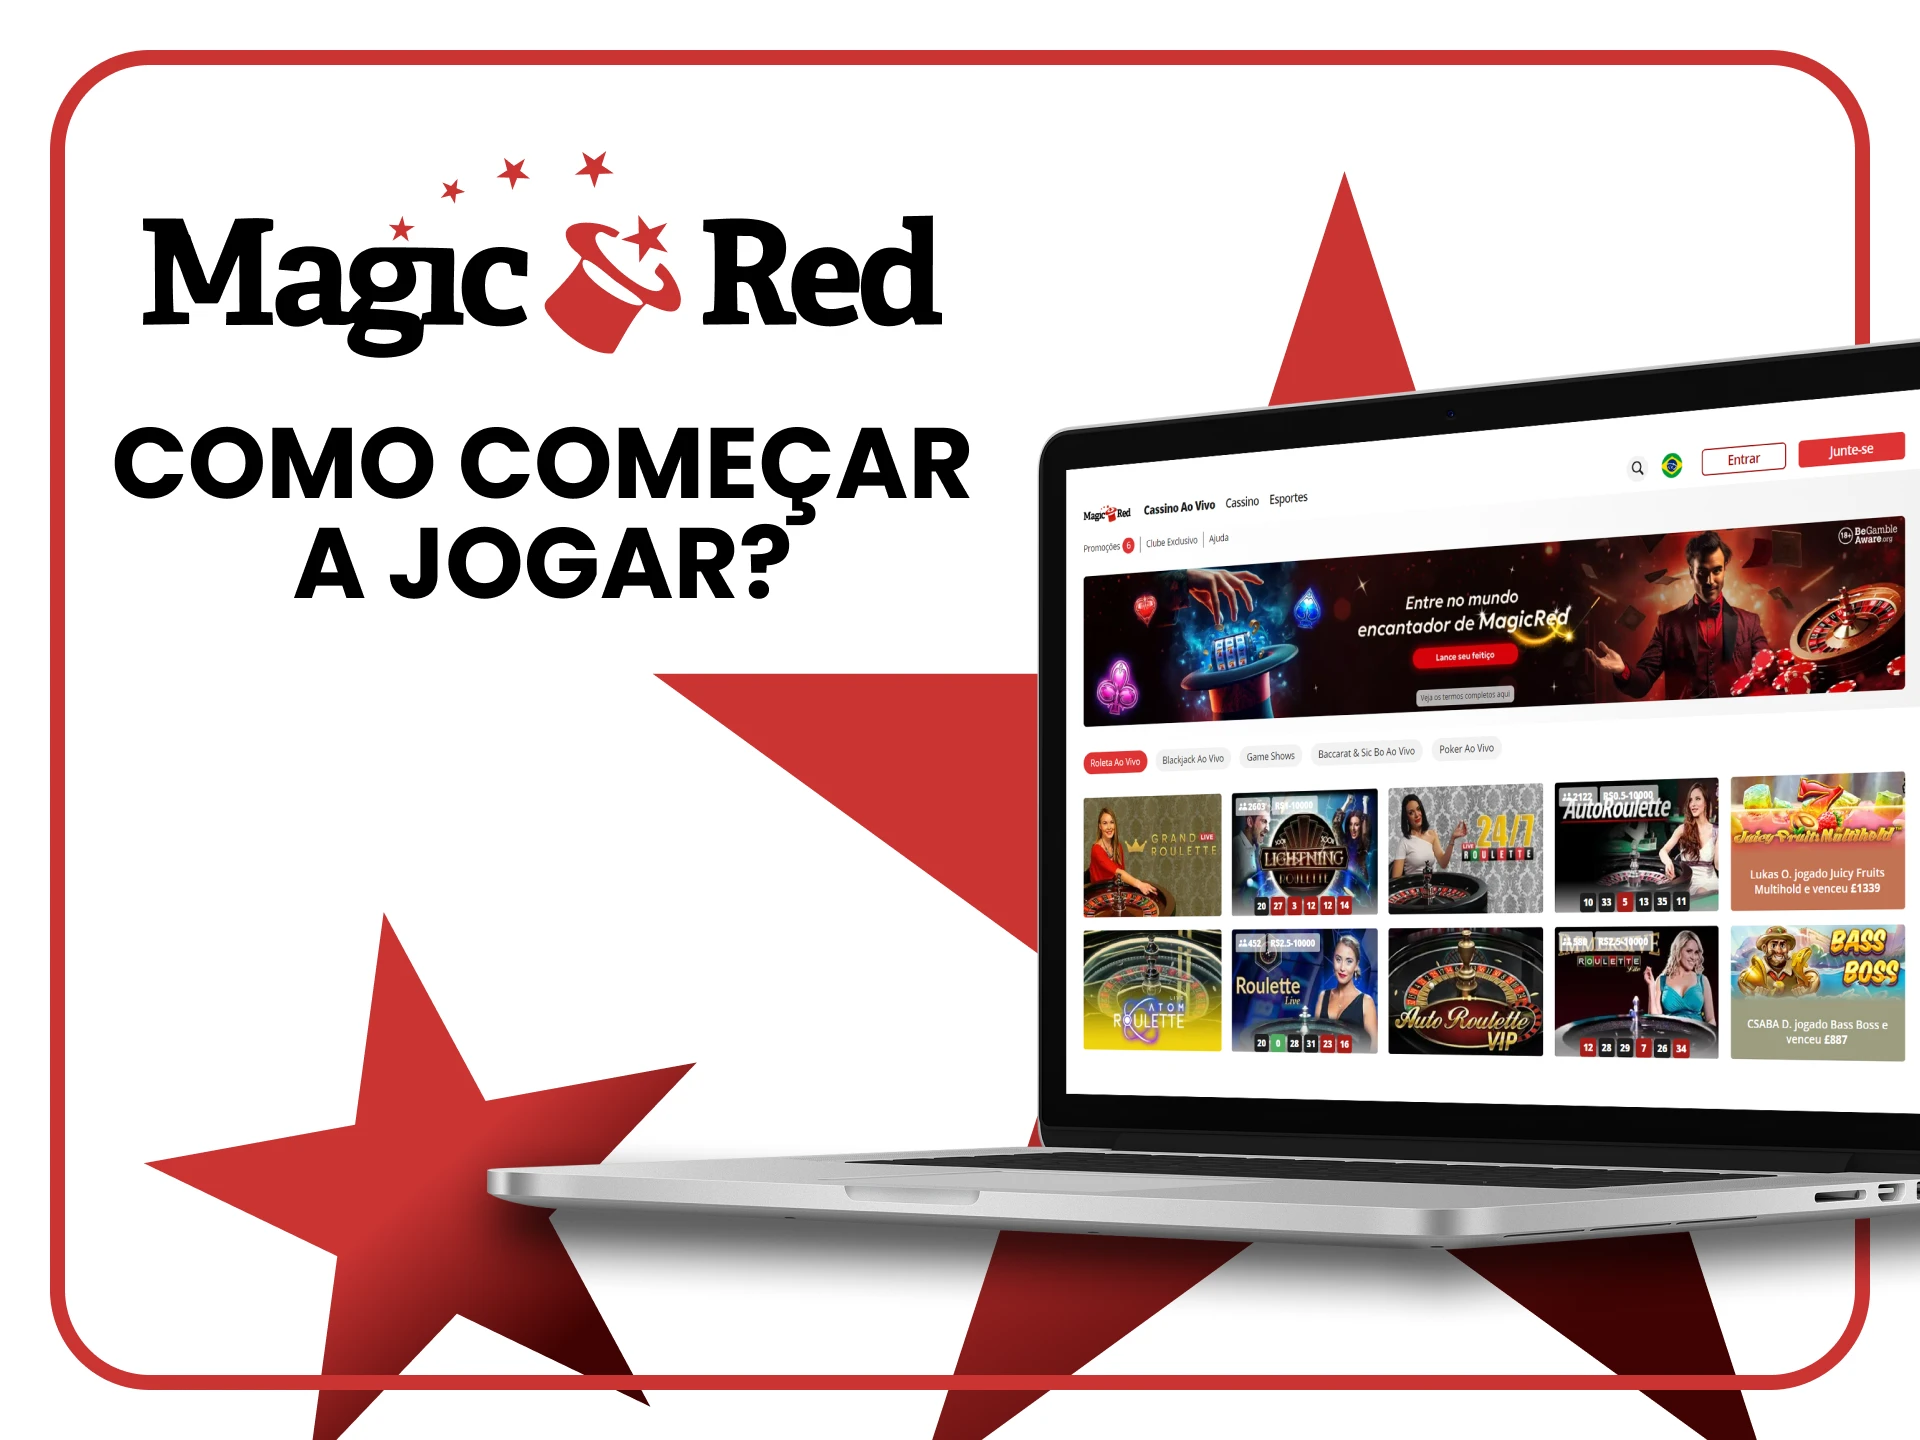 Diremos a você como começar a jogar cassino ao vivo no Magic Red.